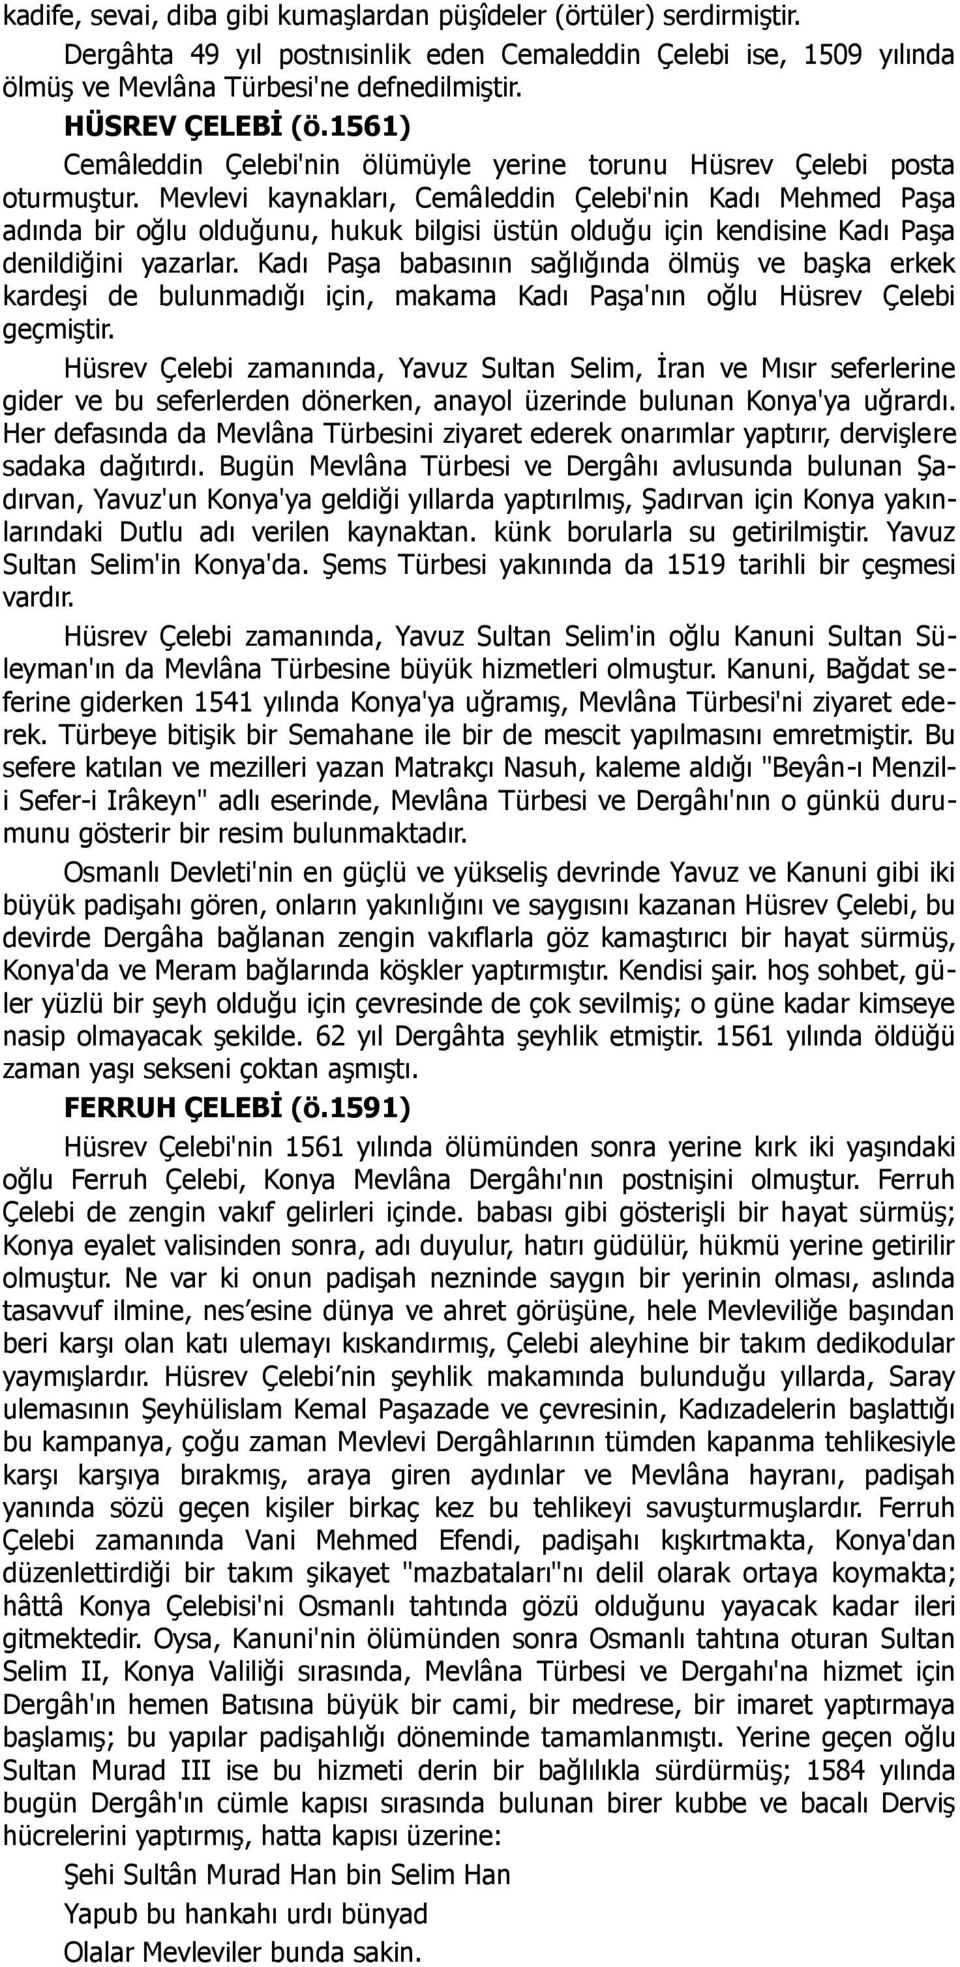 Mevlevi kaynakları, Cemâleddin Çelebi'nin Kadı Mehmed Paşa adında bir oğlu olduğunu, hukuk bilgisi üstün olduğu için kendisine Kadı Paşa denildiğini yazarlar.